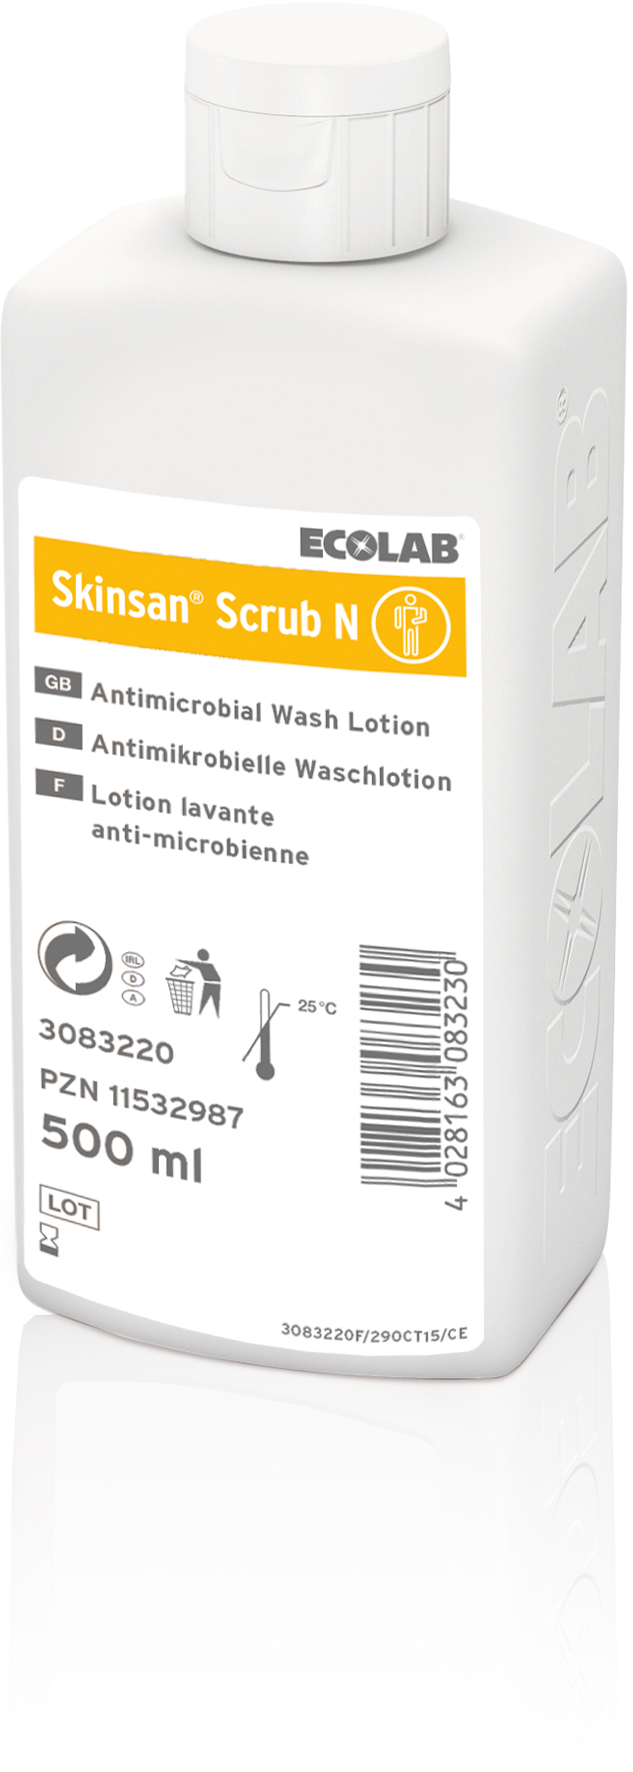 Skinsan scrub N / 500 ml